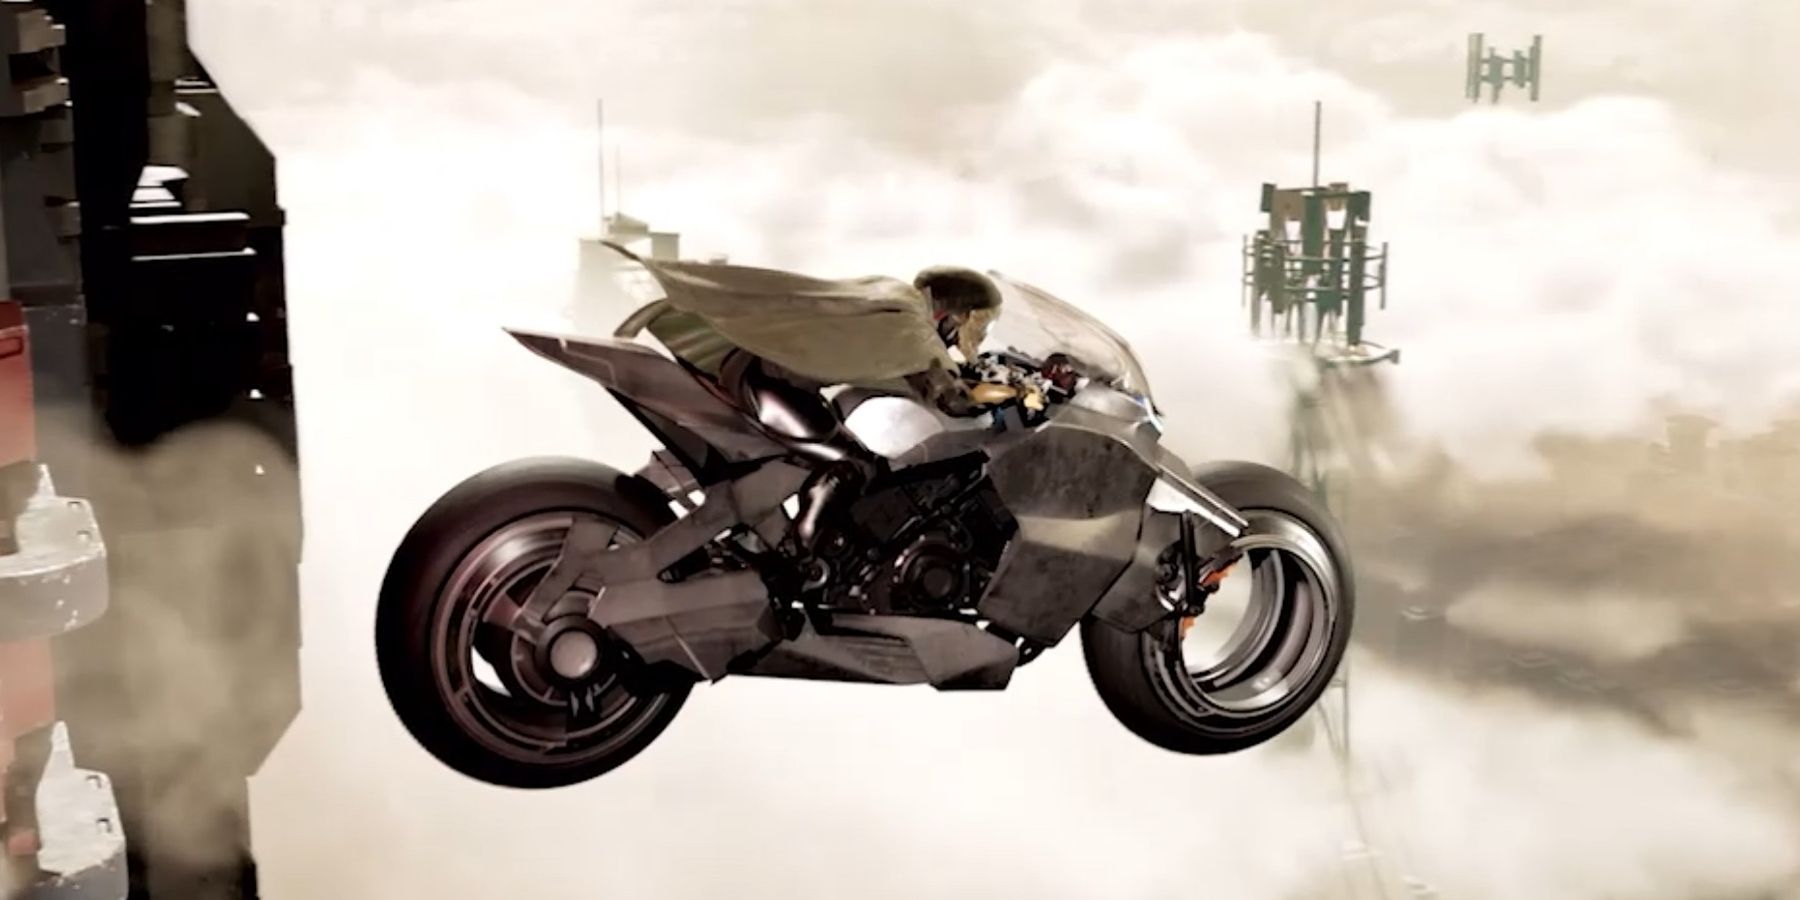 Ghostrunner 2 motorcycle